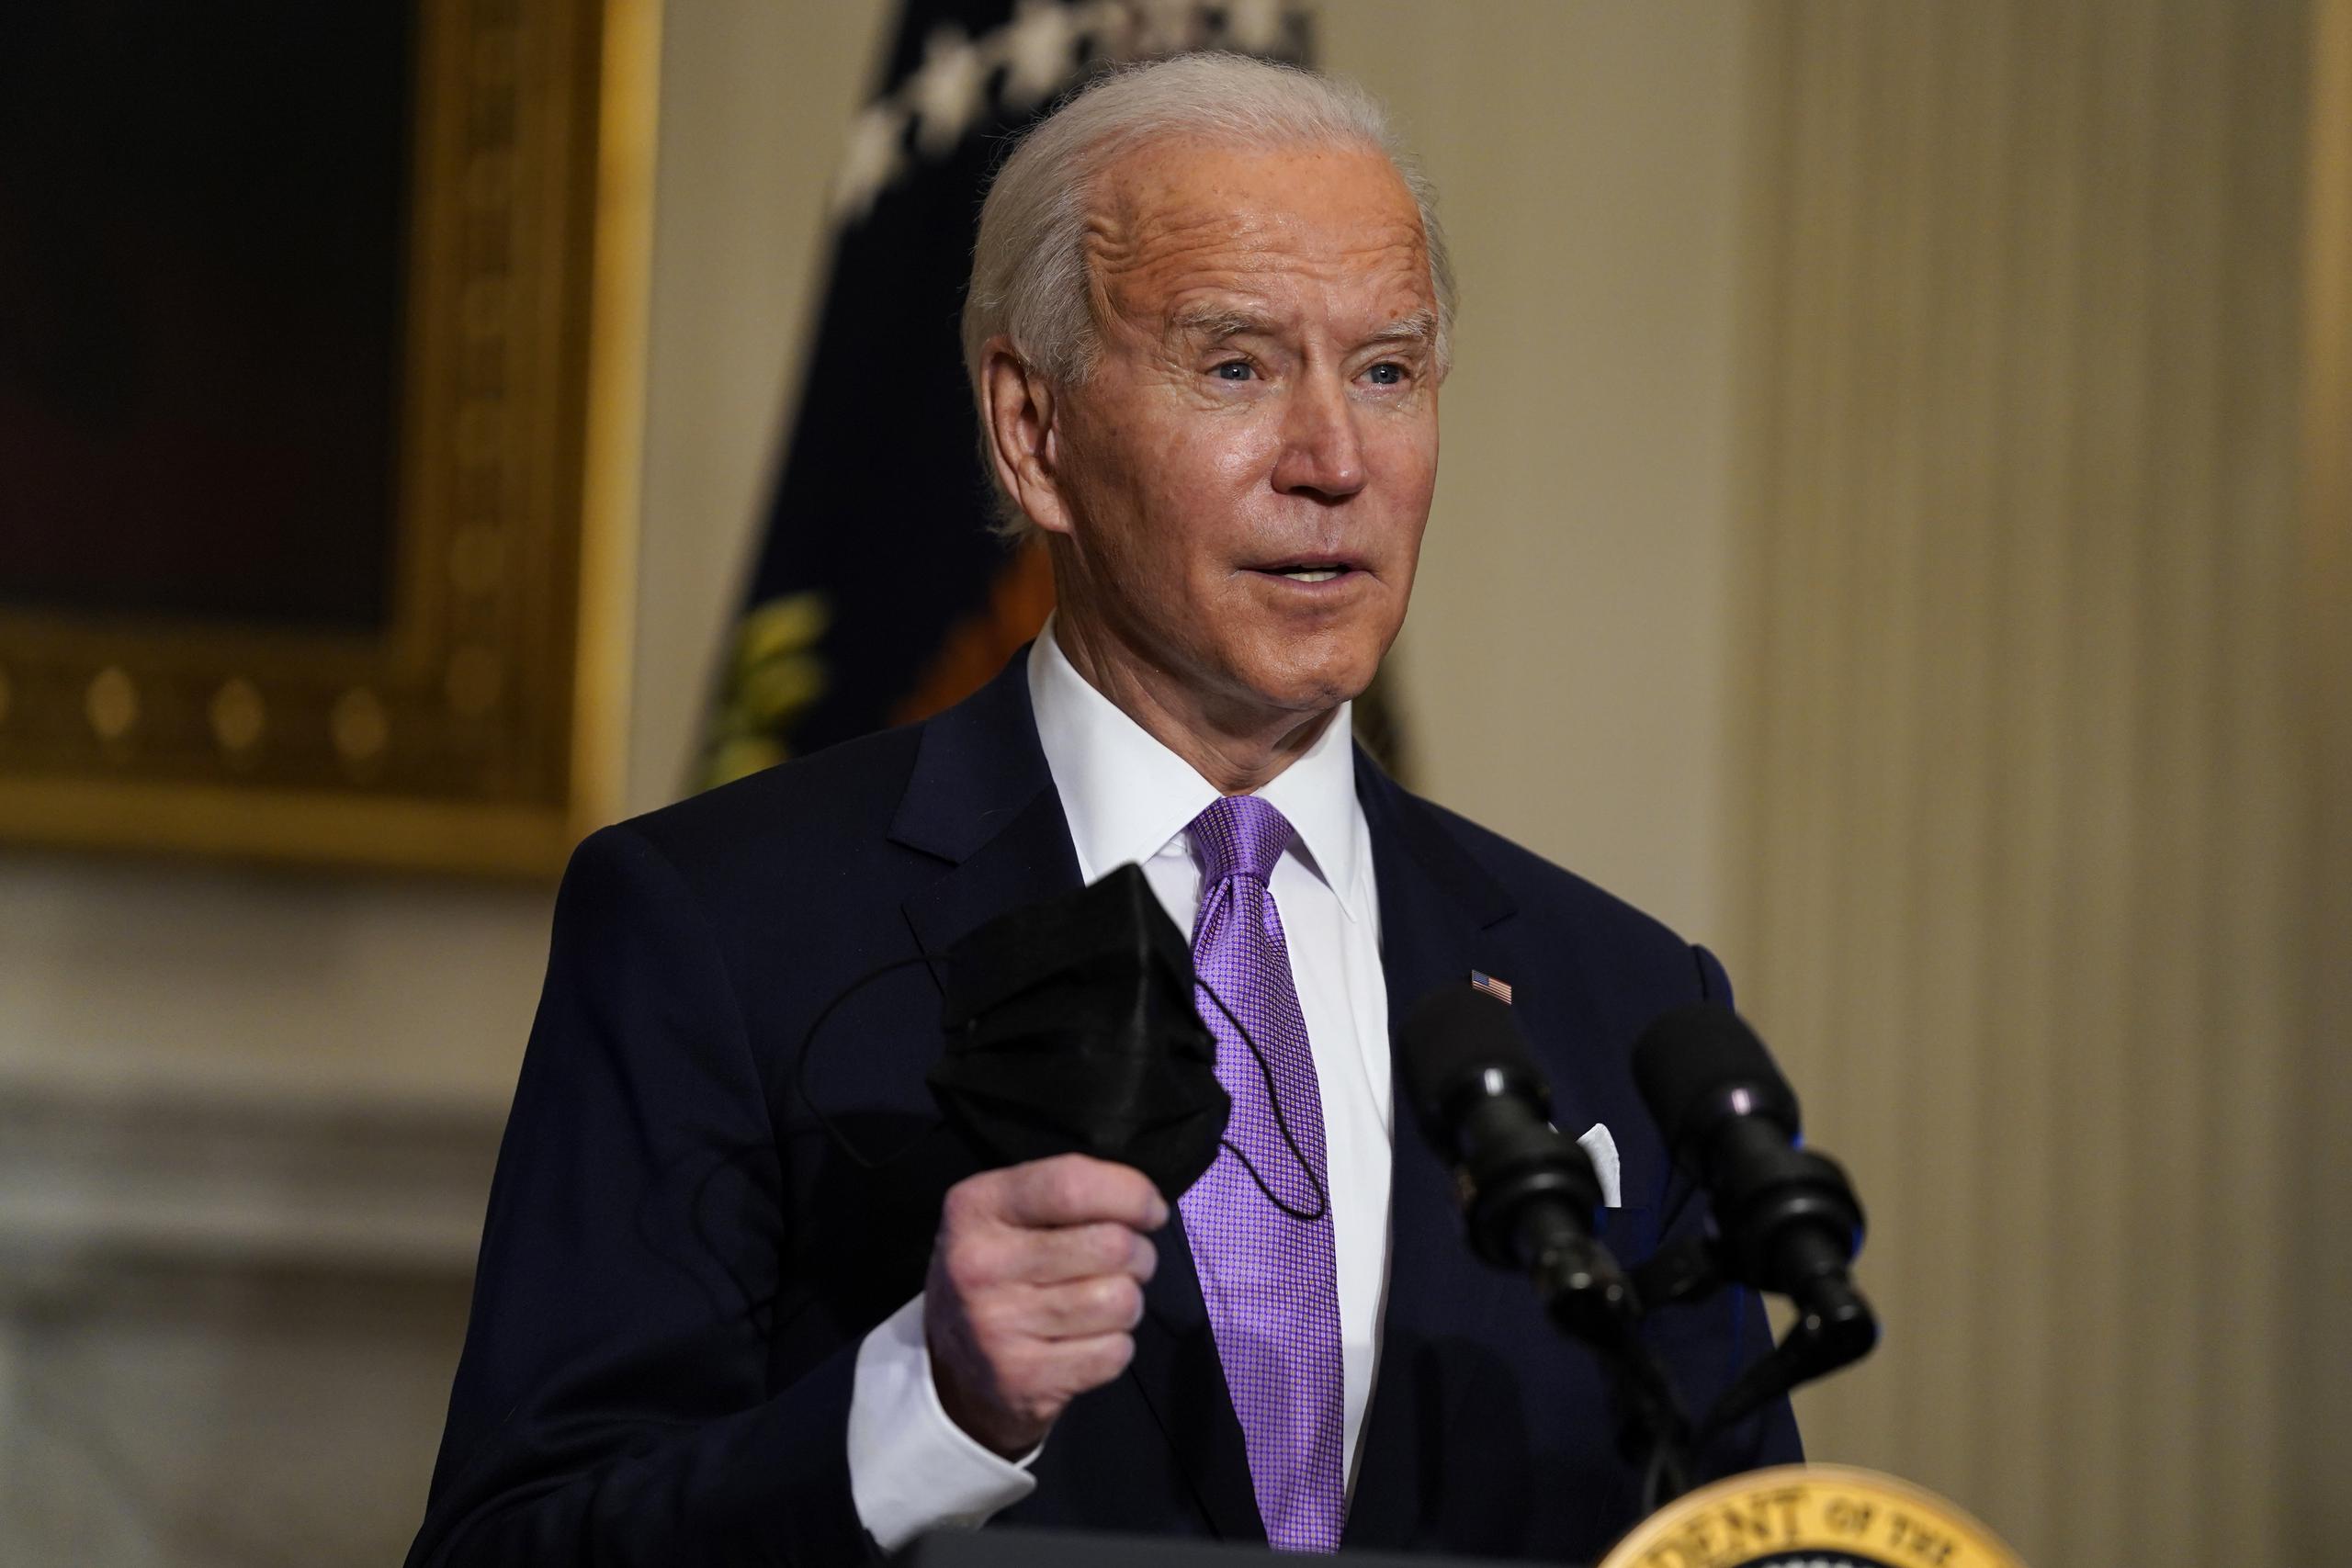 La Casa Blanca aseguró que las medidas de Biden cumplen su promesa electoral “de tomar medidas agresivas para abordar el cambio climático”, incluida la reincorporación al Acuerdo de París anunciada nada más asumir la Presidencia.